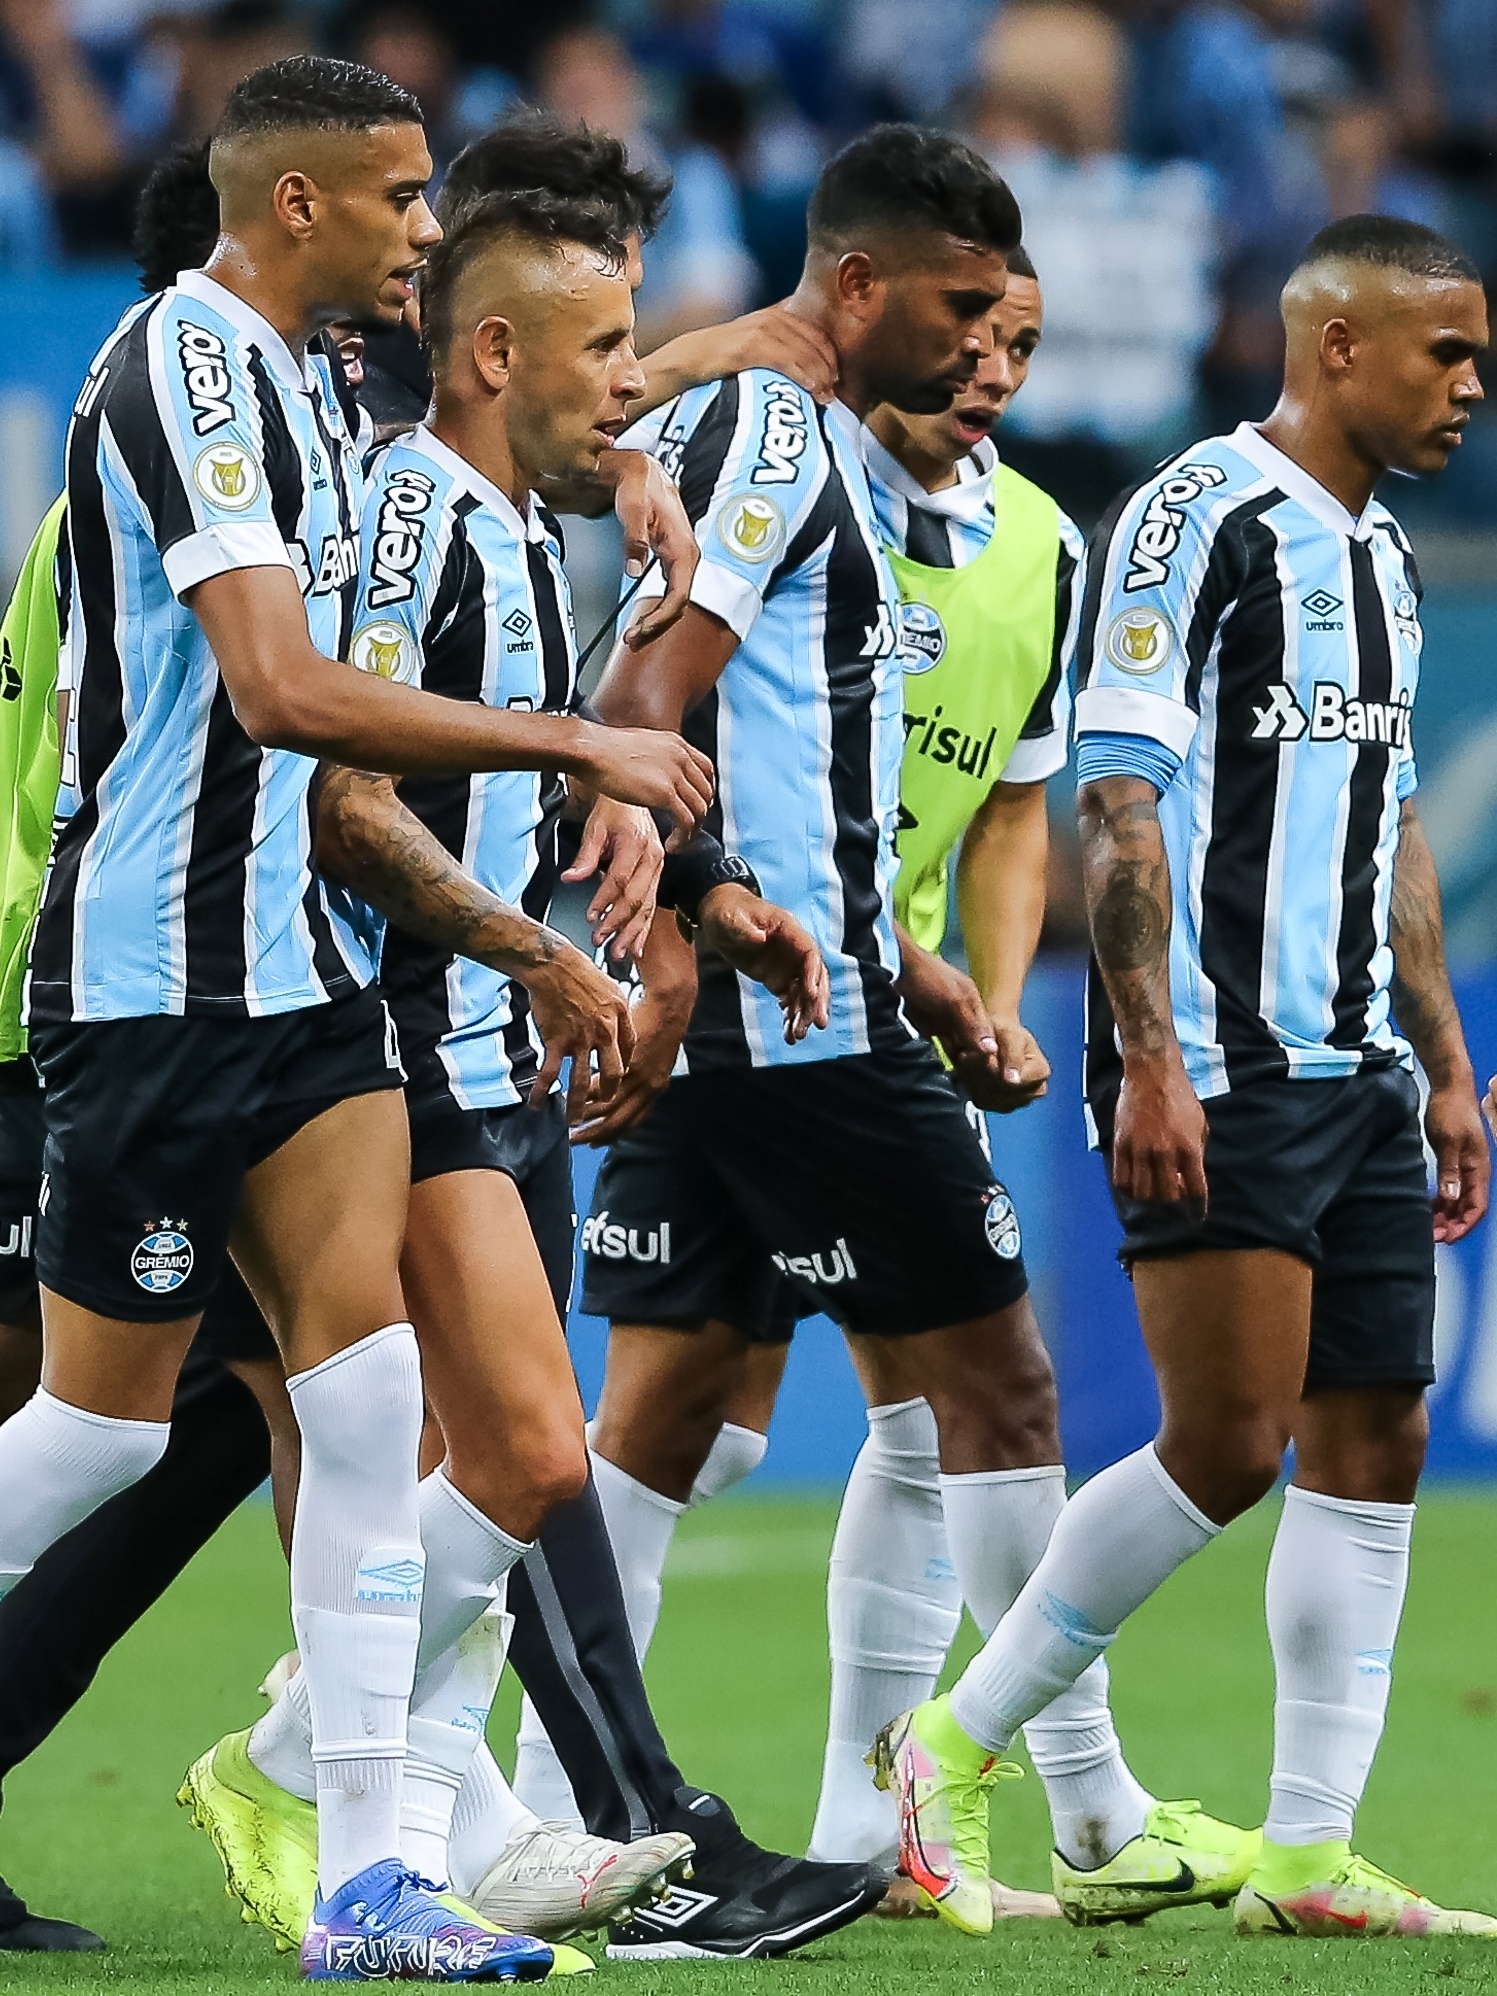 Atlético-MG x Grêmio: como foi o jogo do Brasileirão Série A